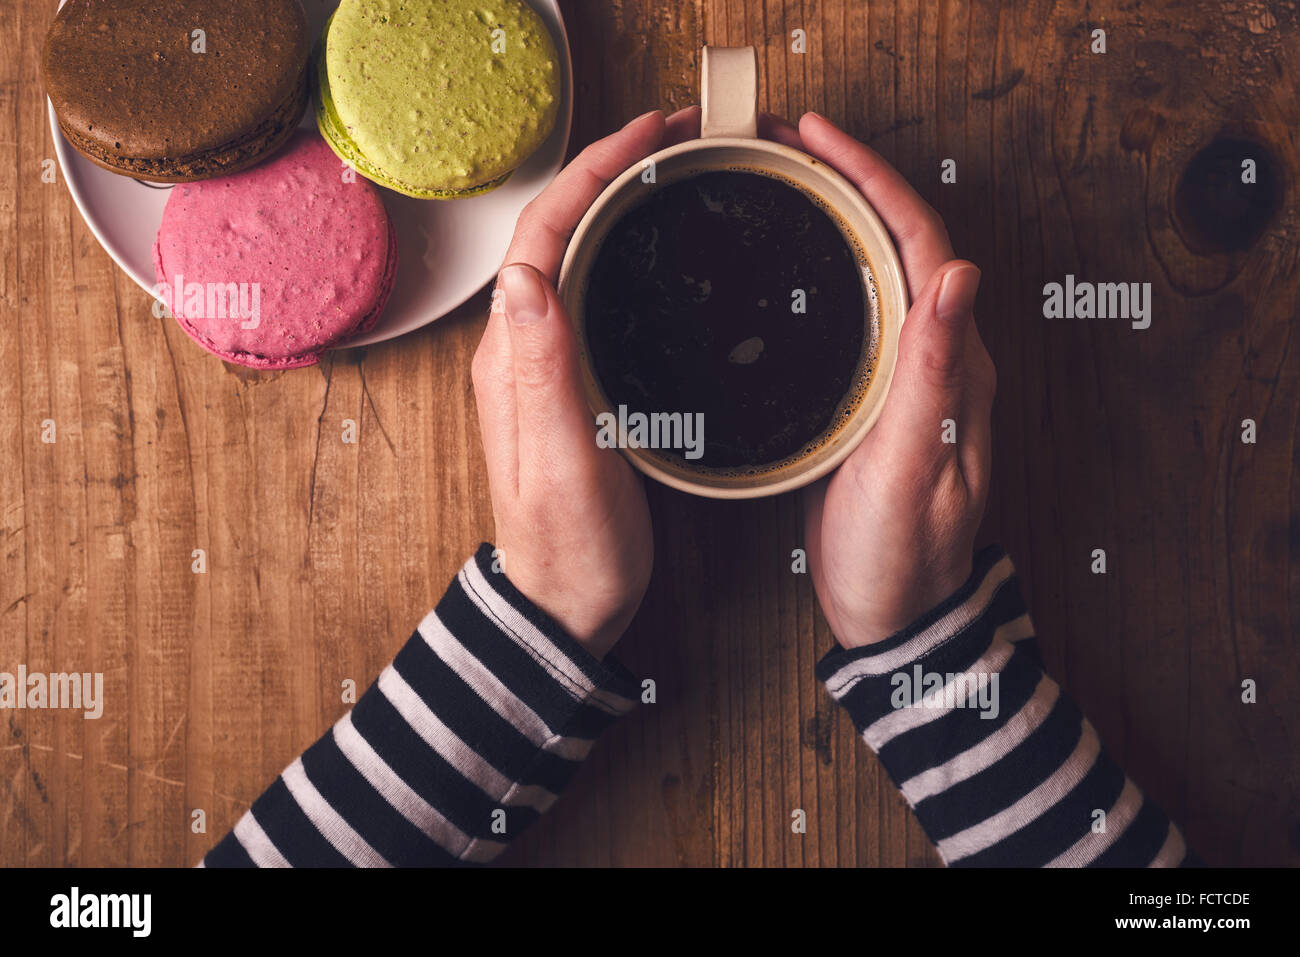 Tasse de café chaud et macaron cookies le matin, femme hand holding cup avec boisson chaude, vue d'en haut, aux couleurs rétro Banque D'Images